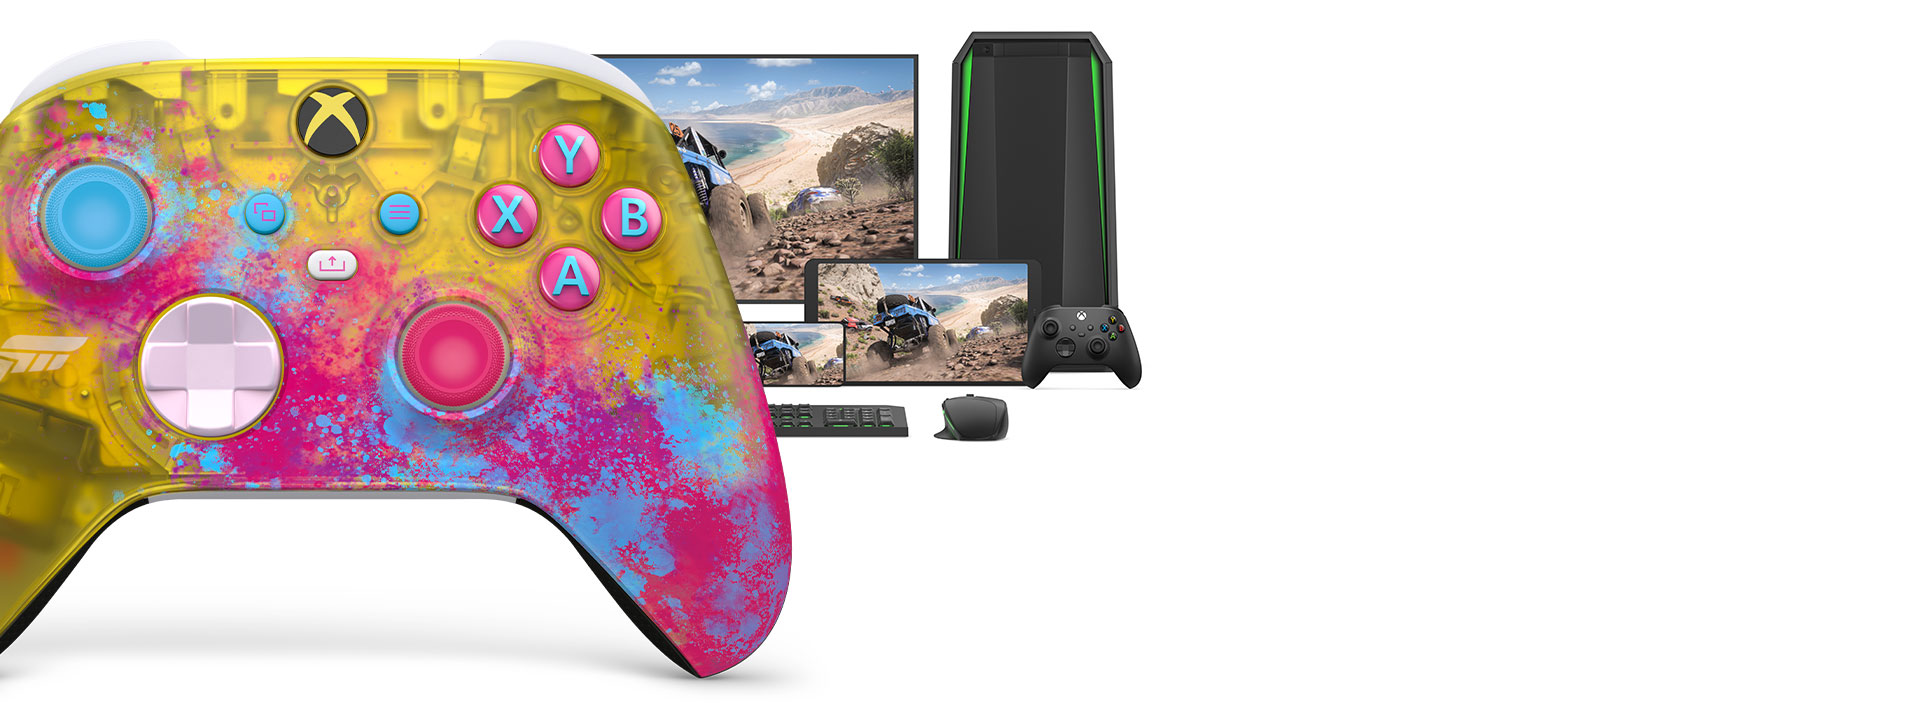 12077円 期間限定送料無料 Xbox ワイヤレス コントローラー Forza Horizon 5 リミテッド エディション